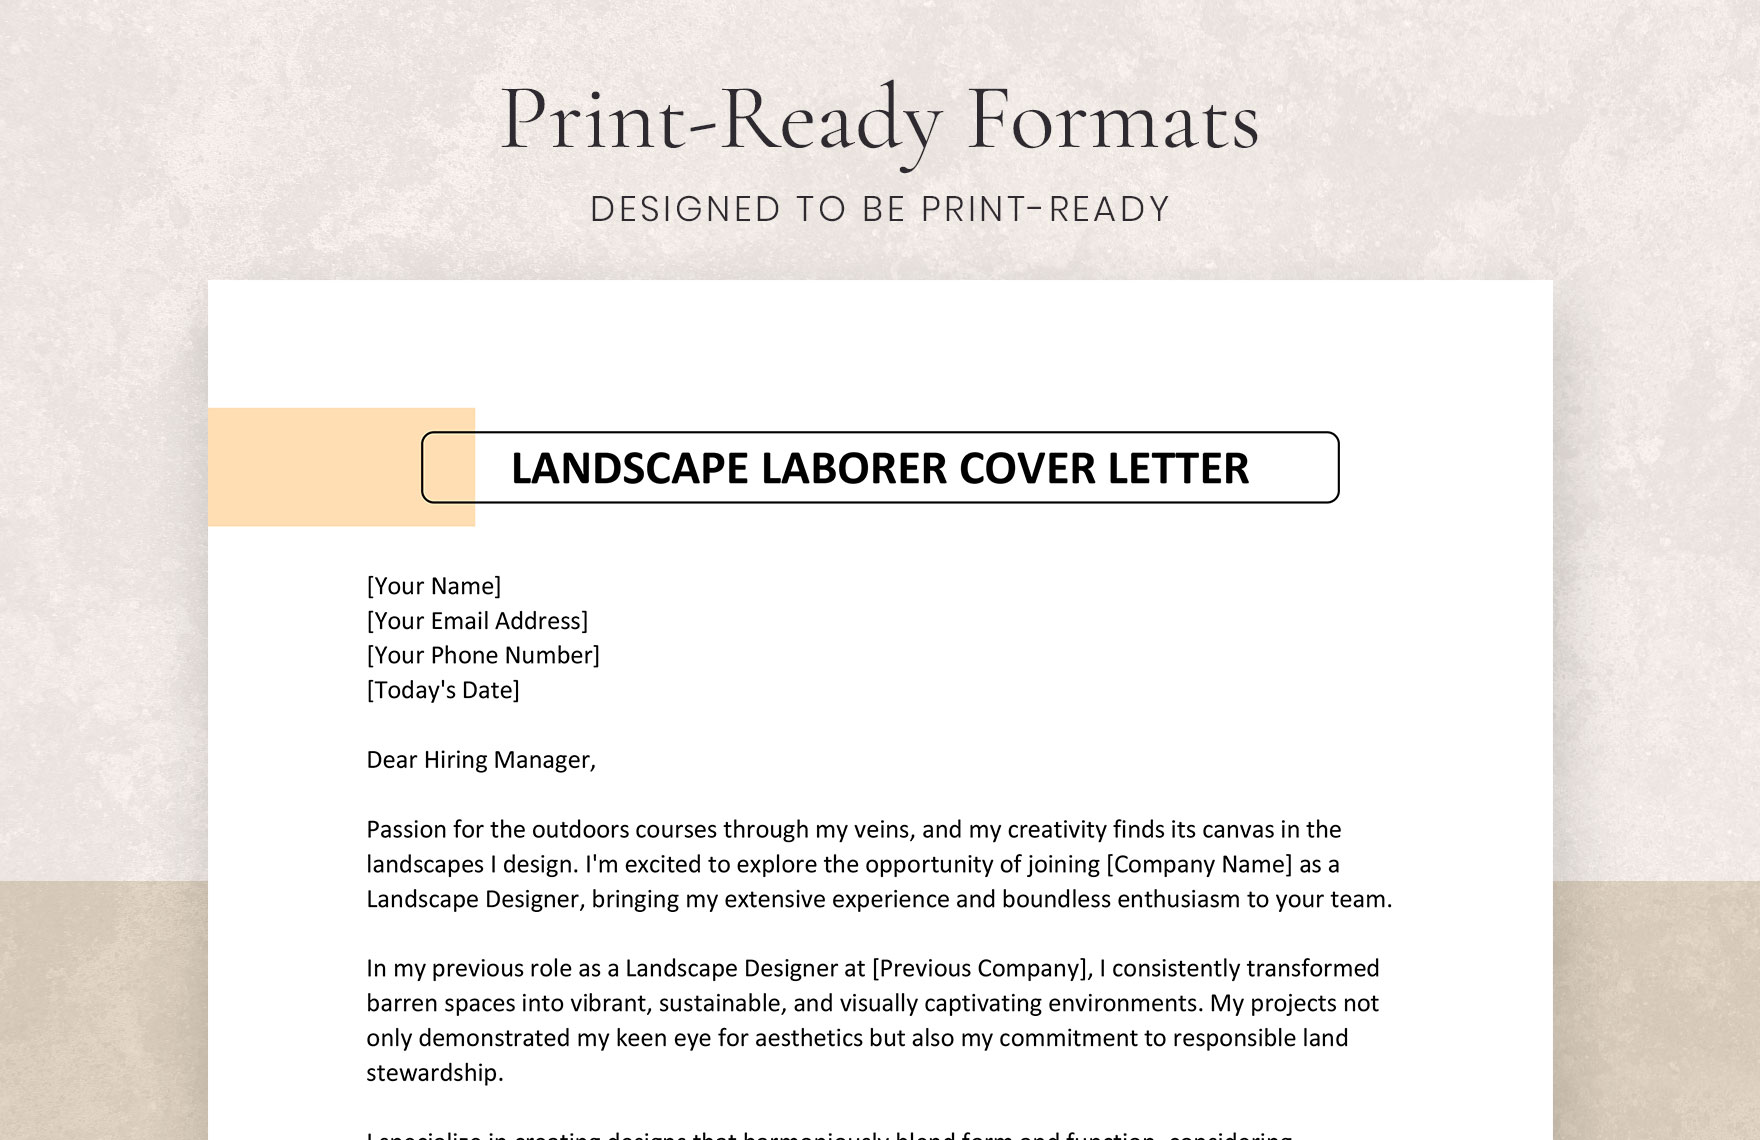 Landscape Laborer Cover Letter